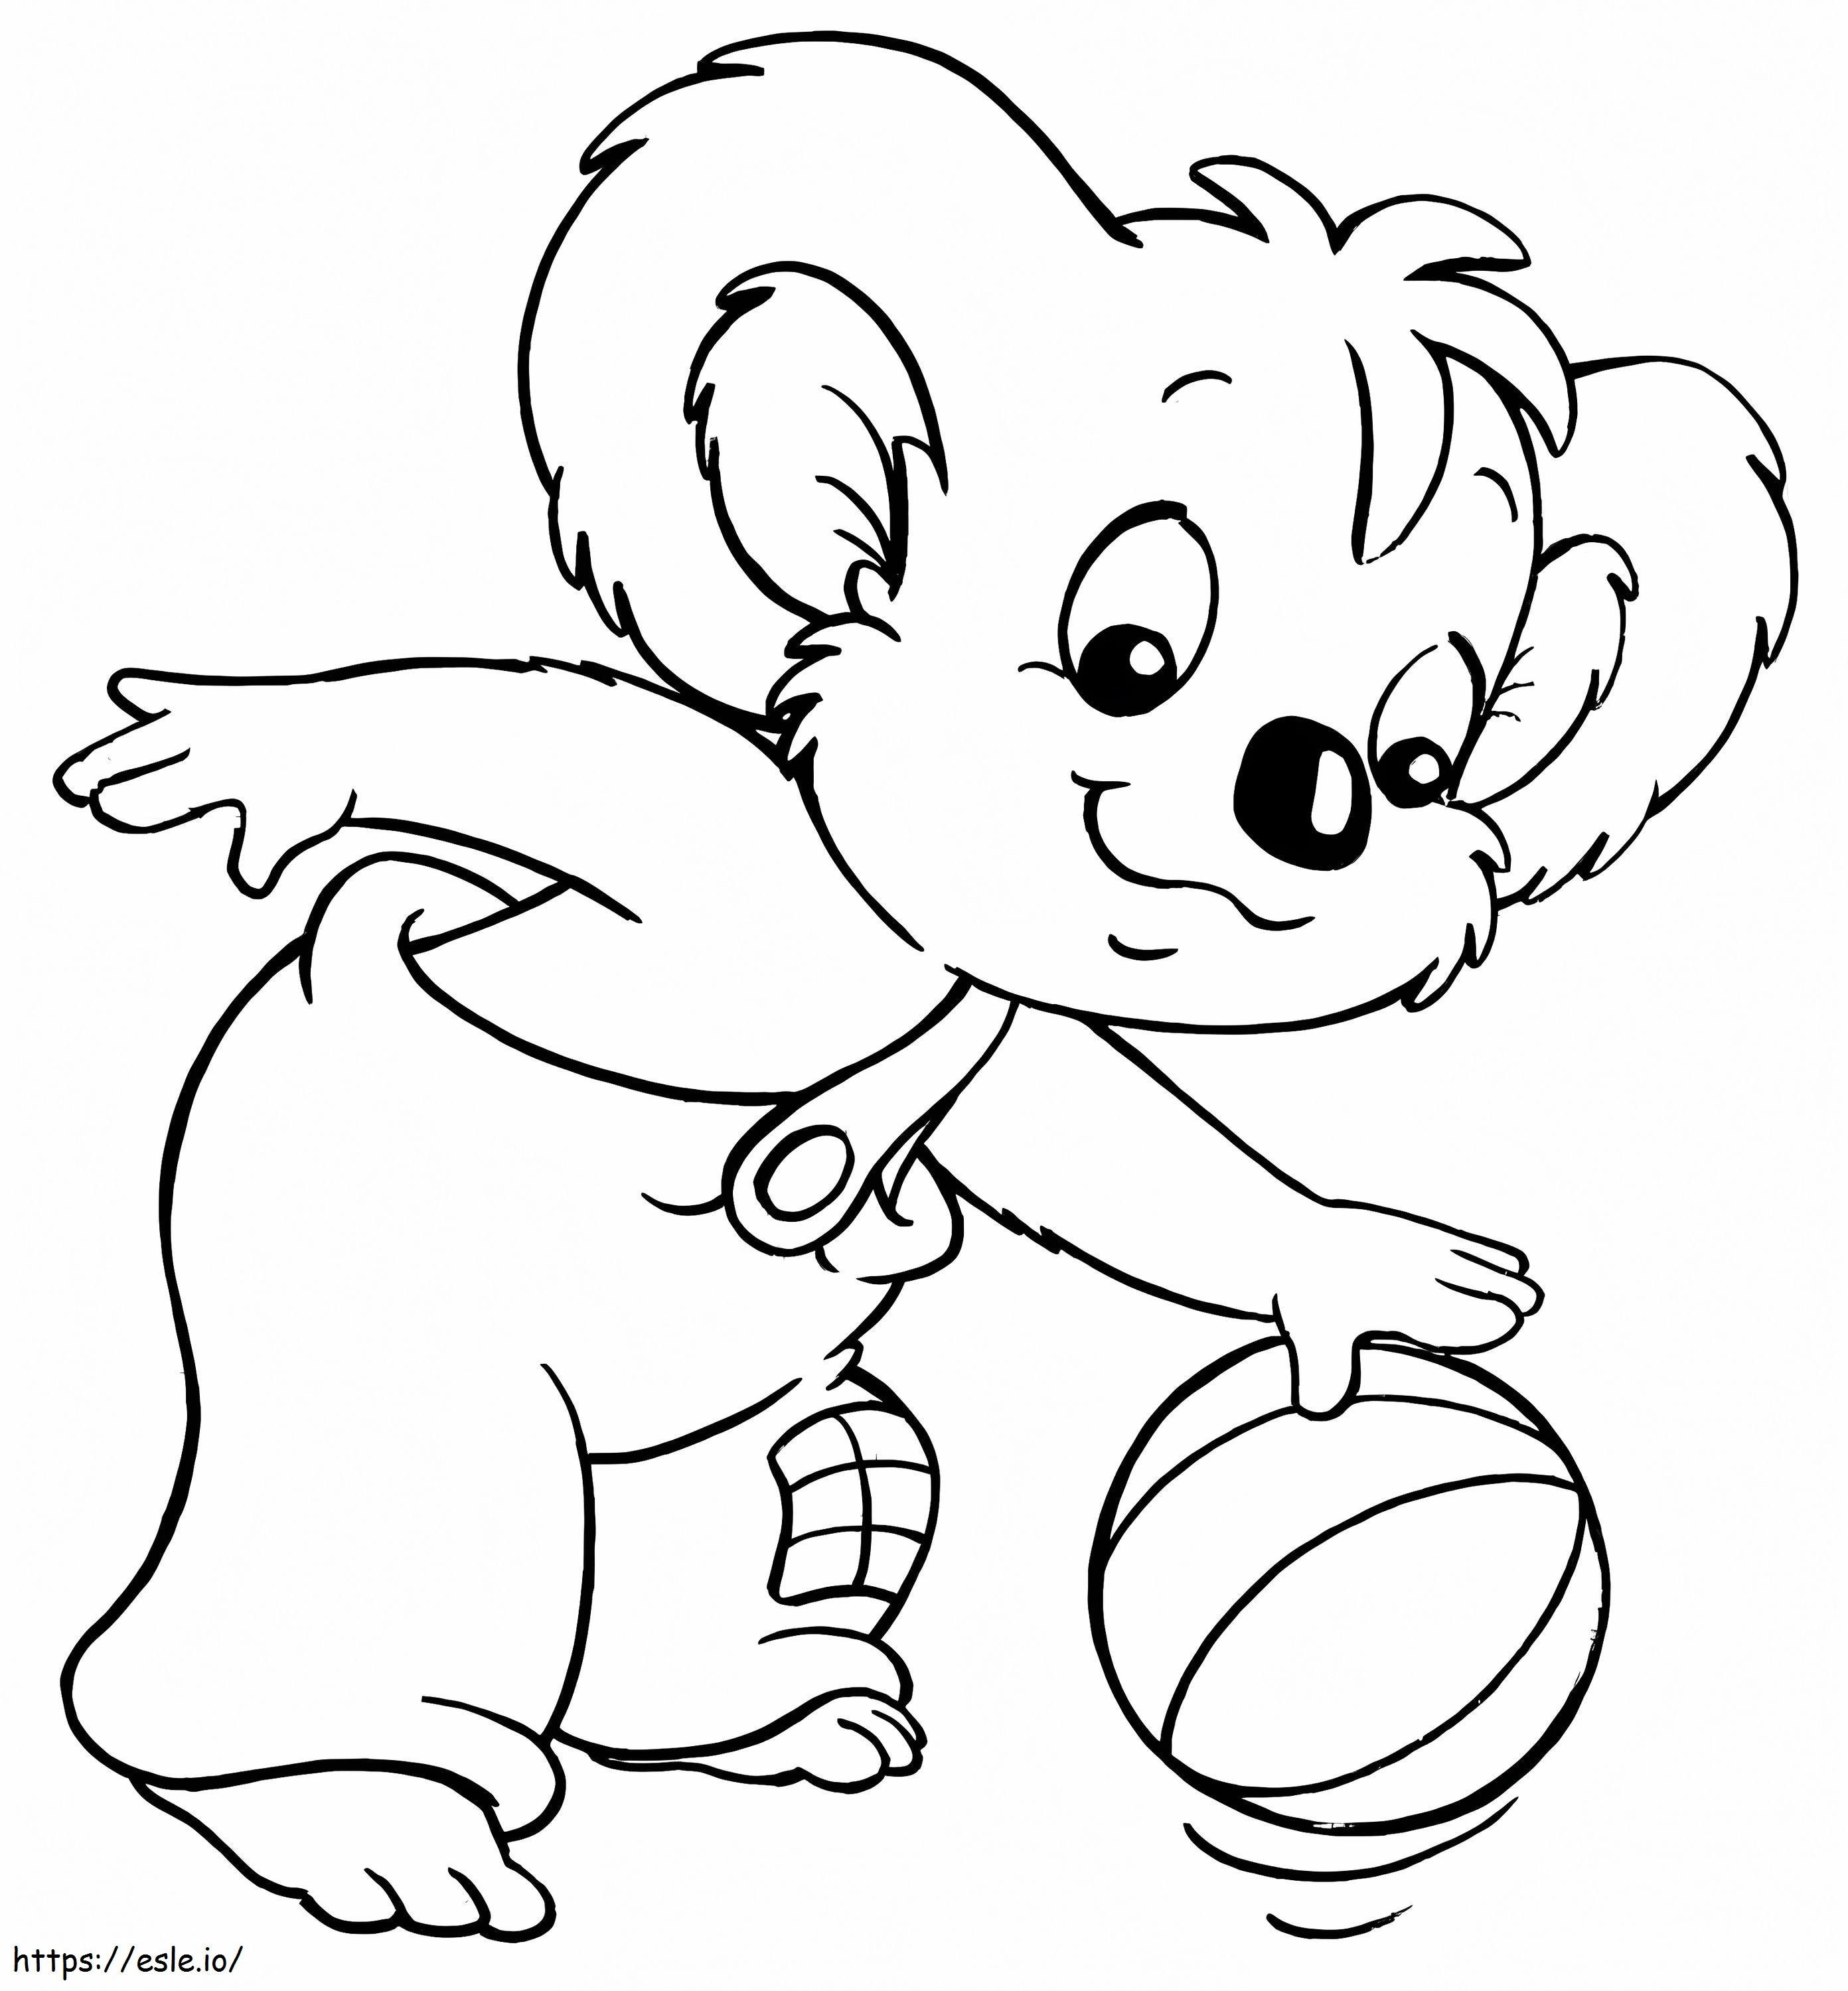 Blinky Bill spielt Basketball ausmalbilder